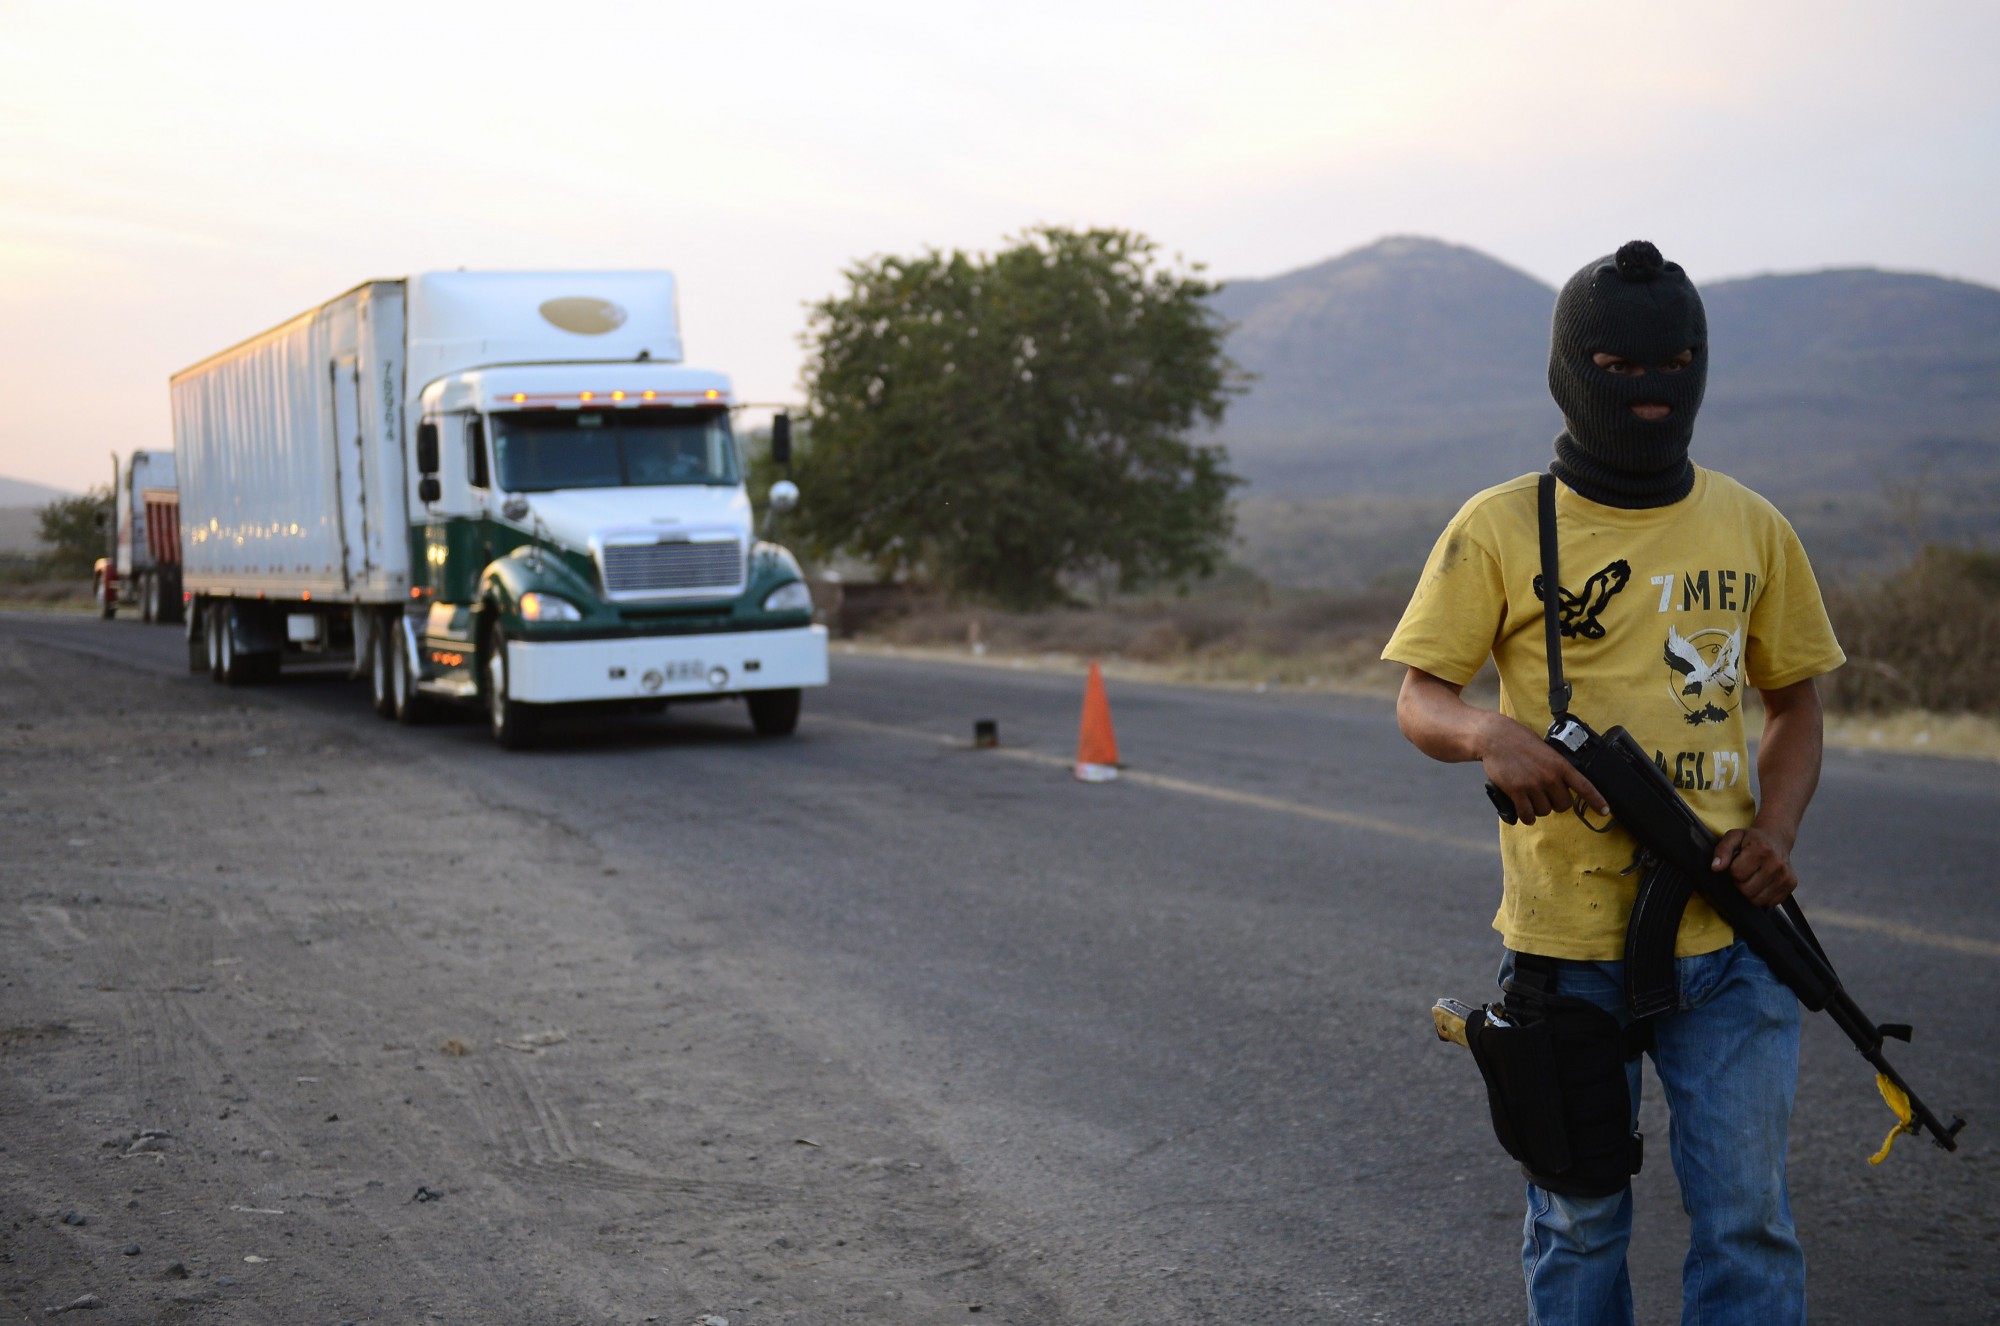 Un miembro de un grupo de autodefensa patrulla una carretera entre Tepalcatepec y Apatzingán, en el estado de Michoacán. Grupos de civiles tomaron las armas en 2014 en respuesta a la violencia causada por los cárteles de la droga. (Crédito: Alfredo Estrella/AFP/Getty Images)